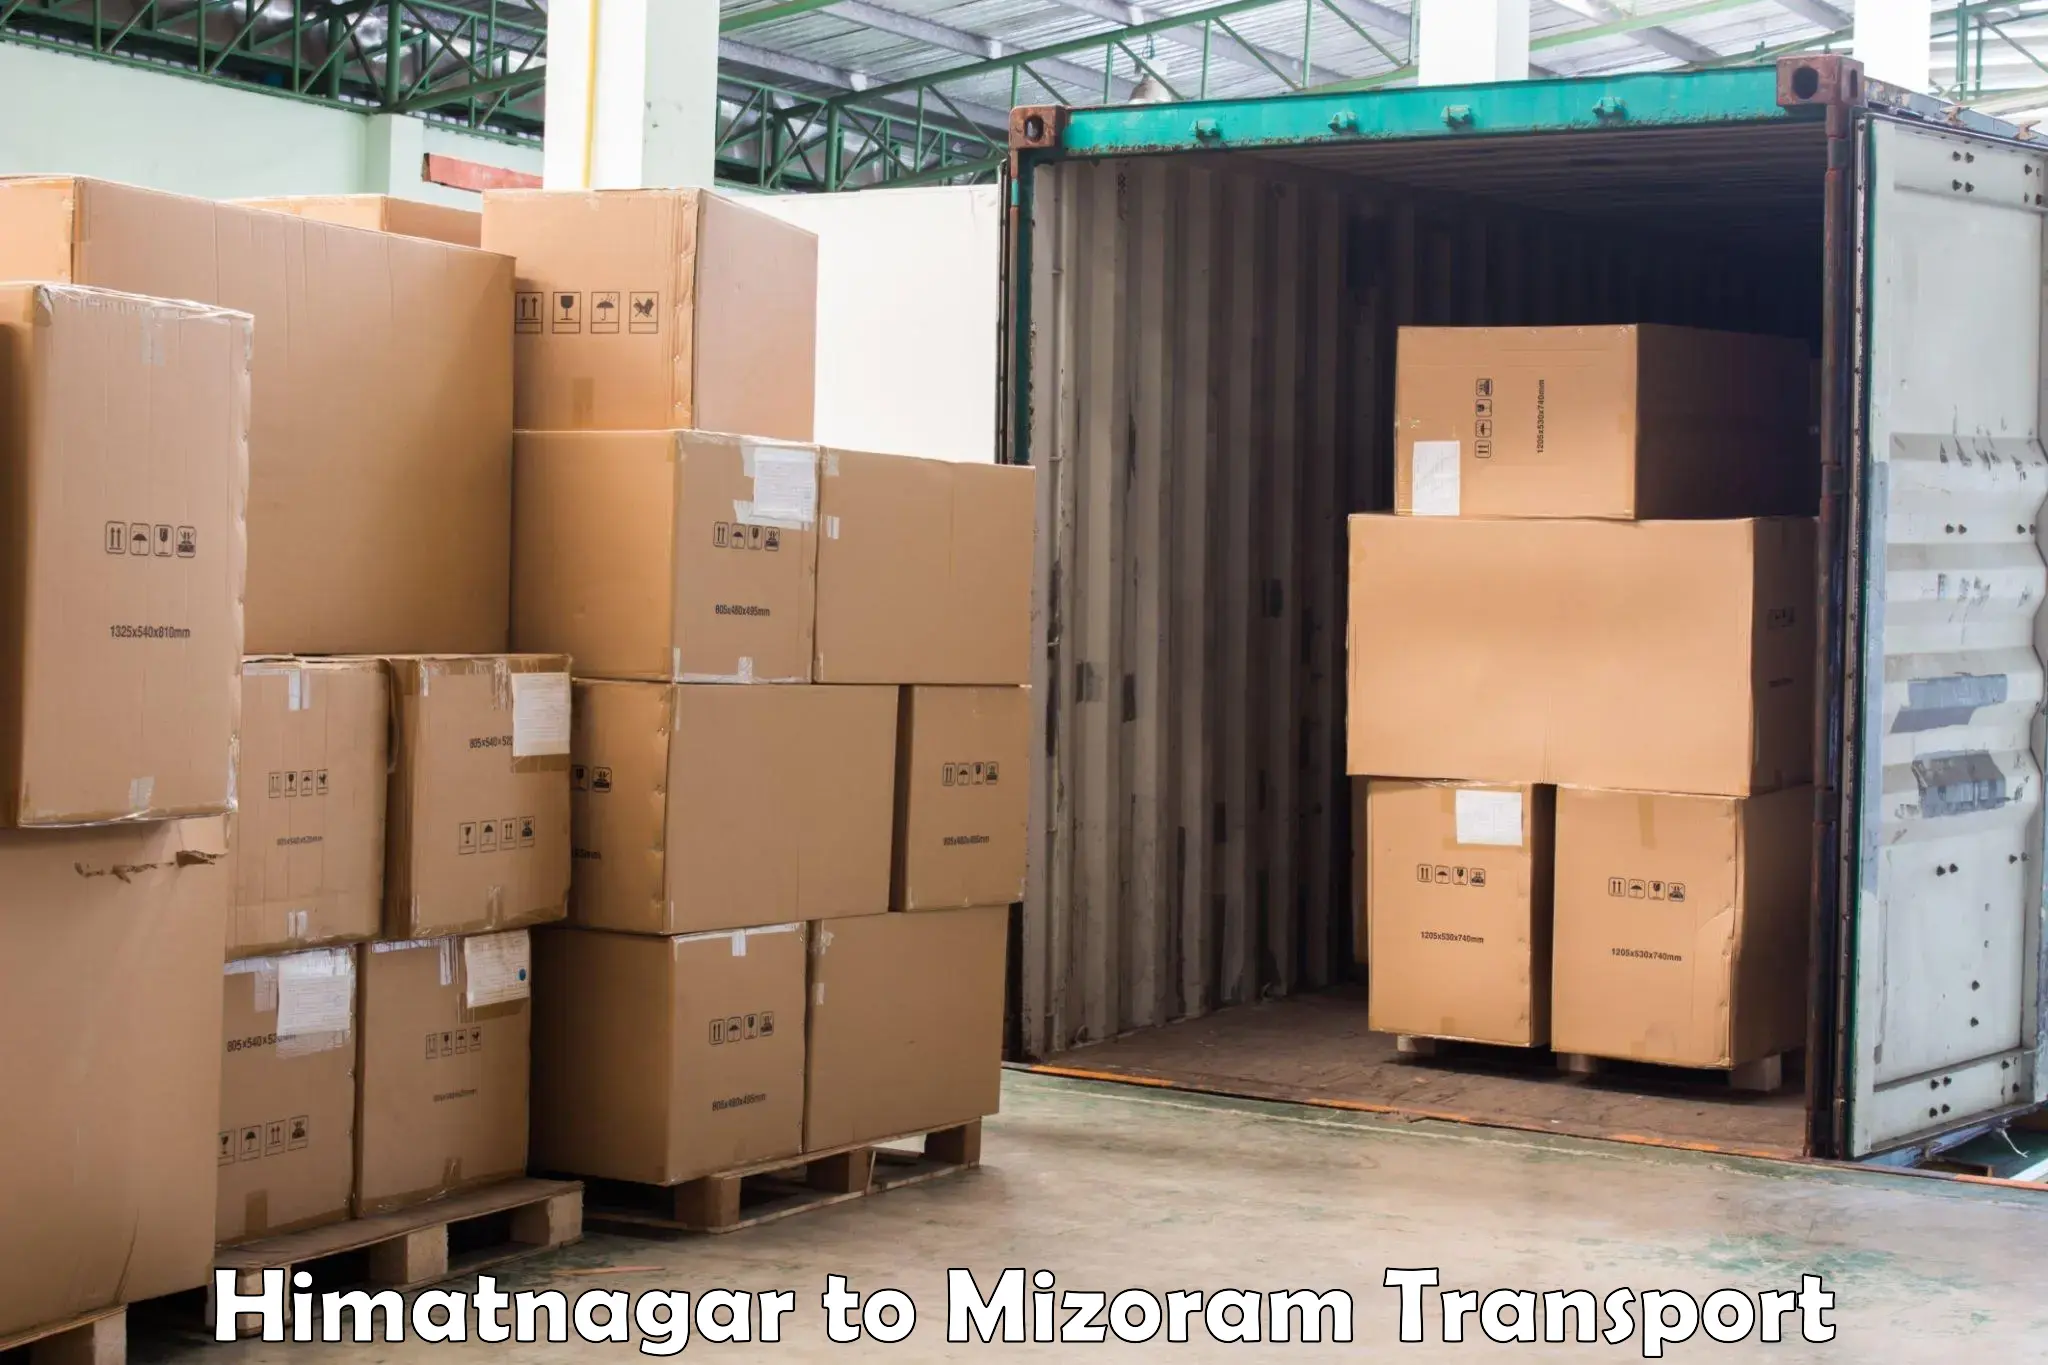 Commercial transport service Himatnagar to Kolasib